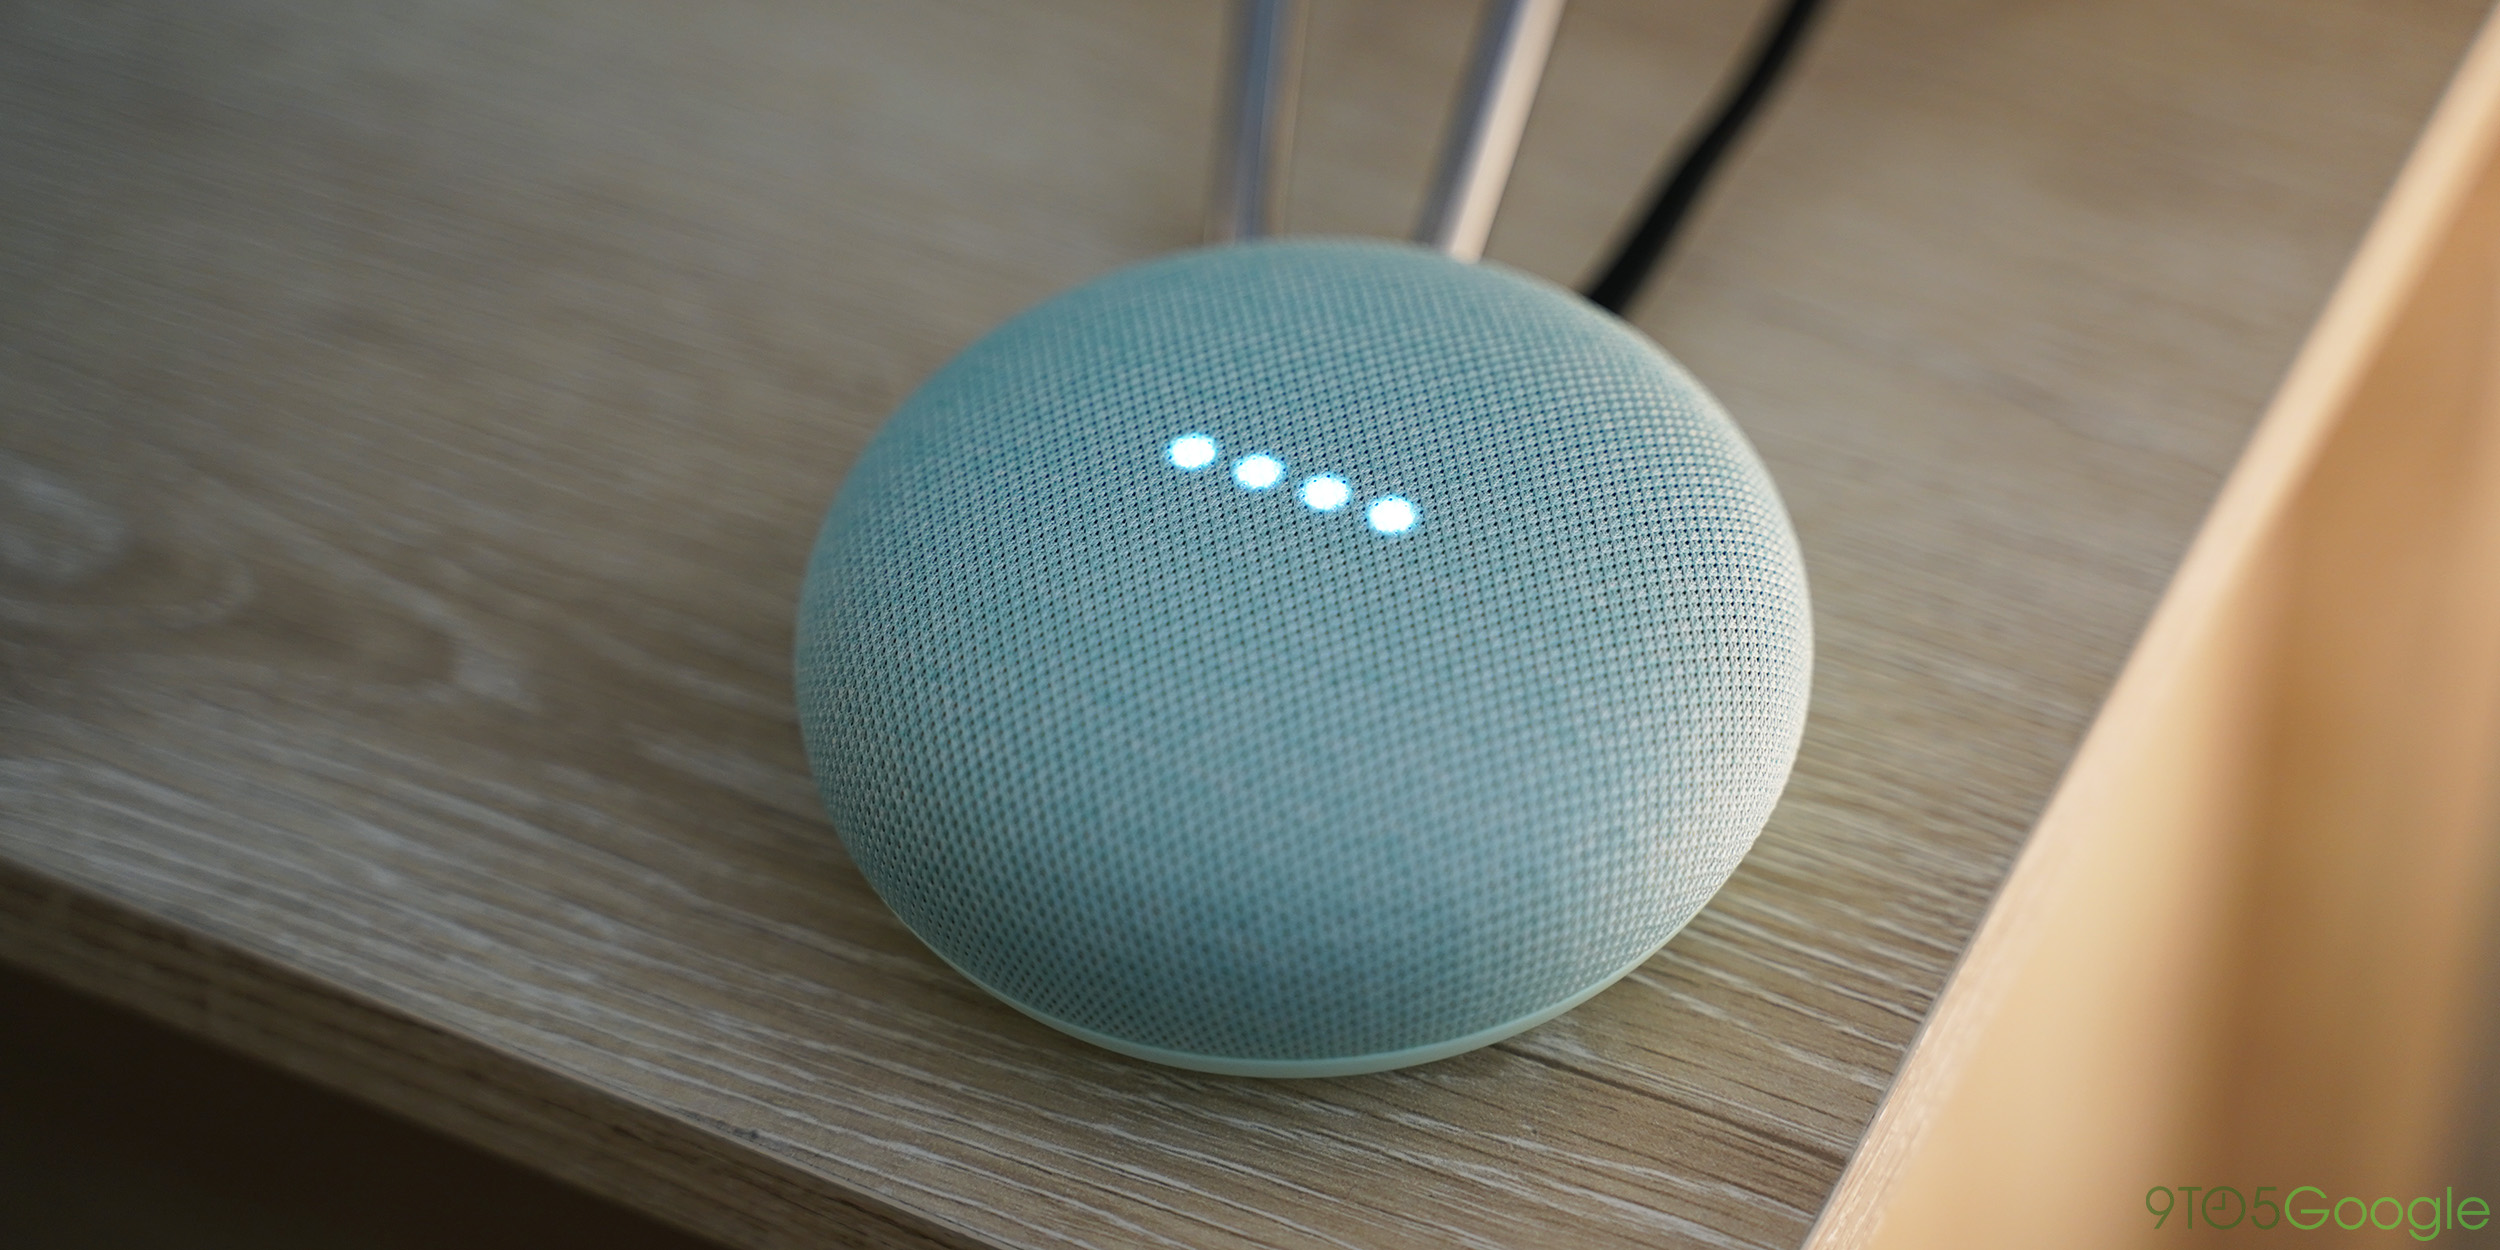 Google Home Mini smart speaker